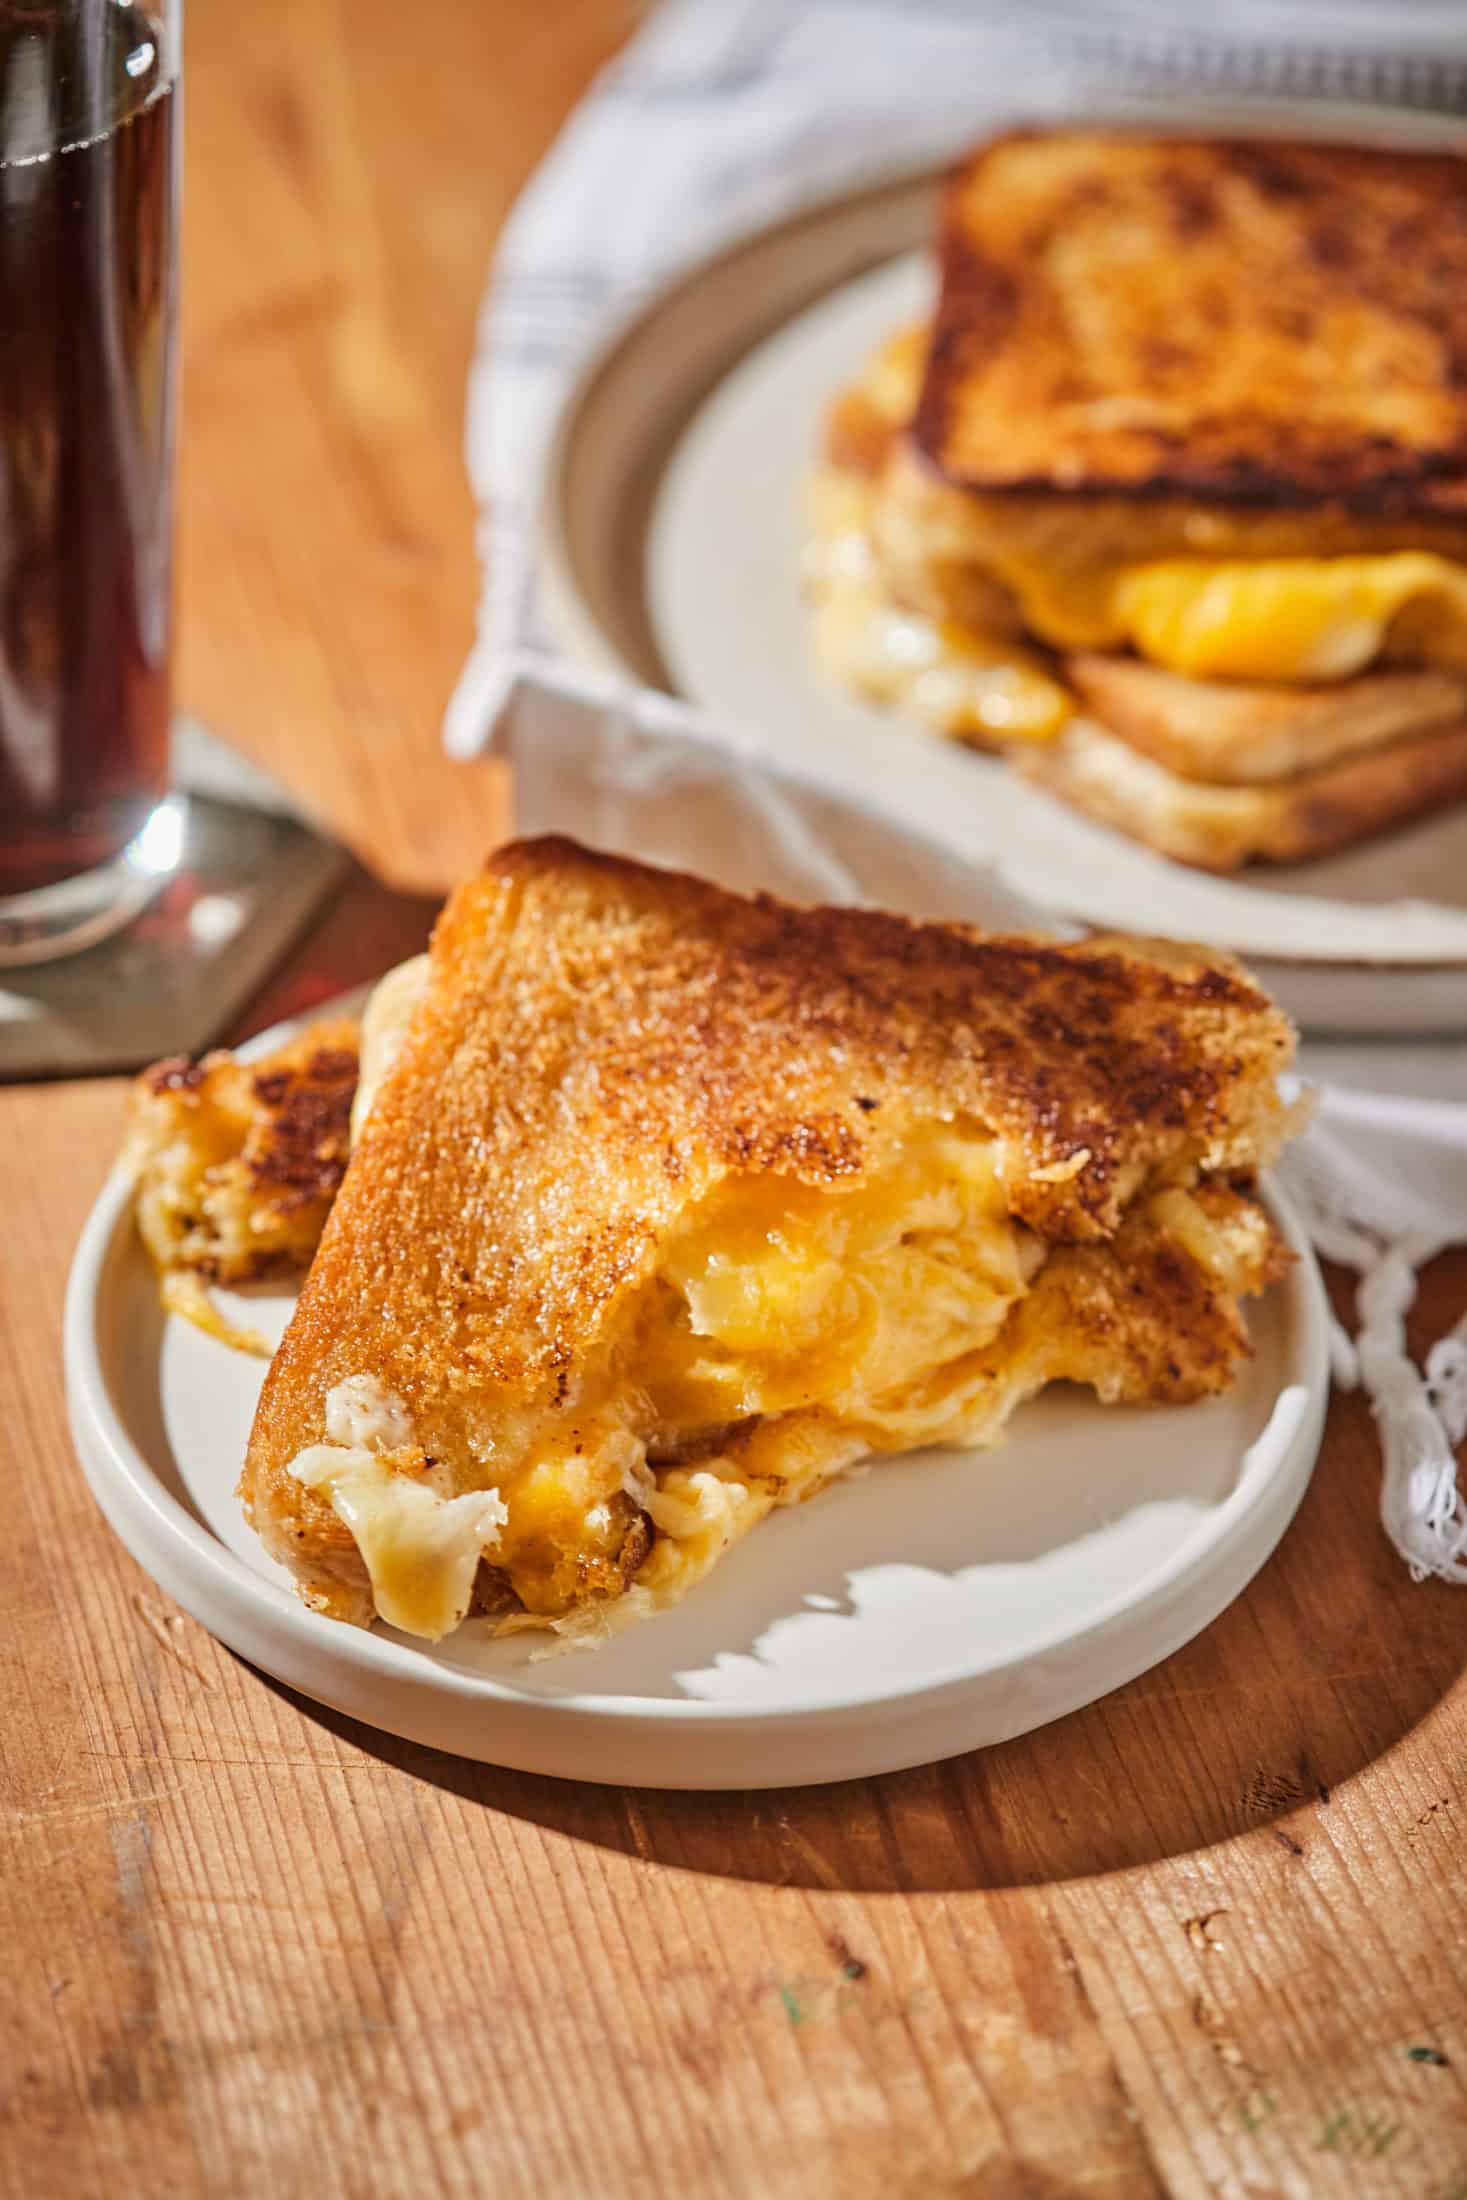 grillezett-sajtos-szendvics-negyfele-sajttal